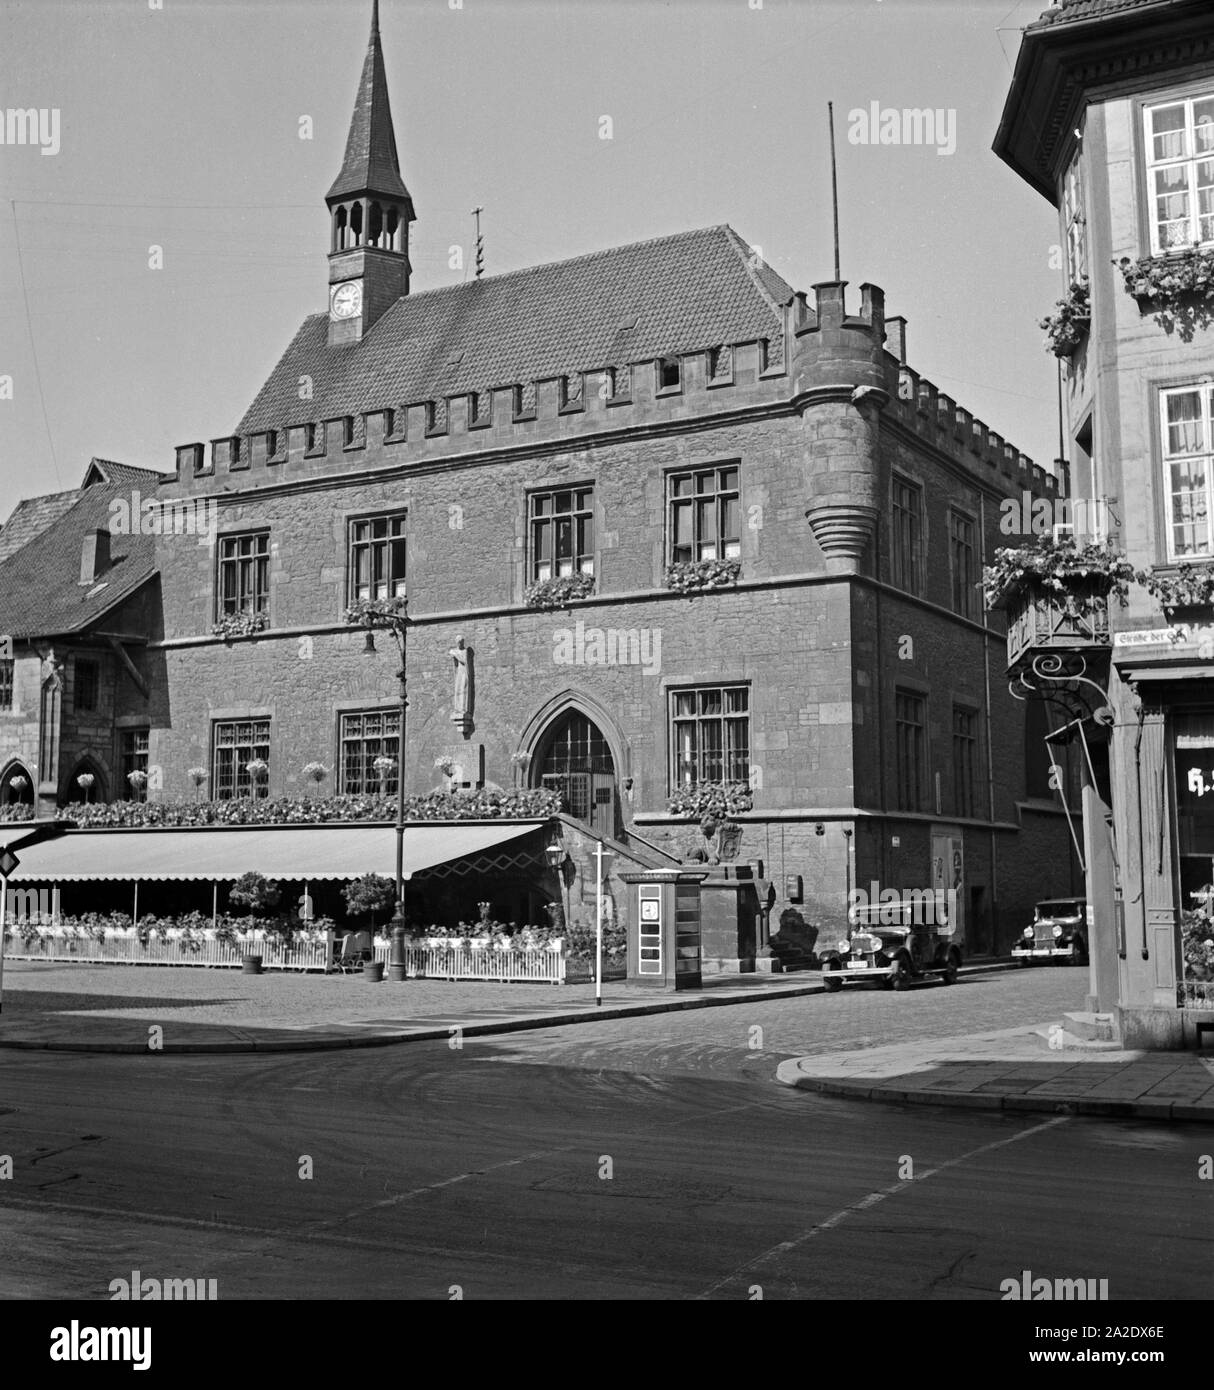 Das alte Rathaus auf dem Marktplatz a Gottinga, Deutschland 1930er Jahre. Il vecchio municipio presso il principale mercato di Goettingen, Germania 1930s. Foto Stock